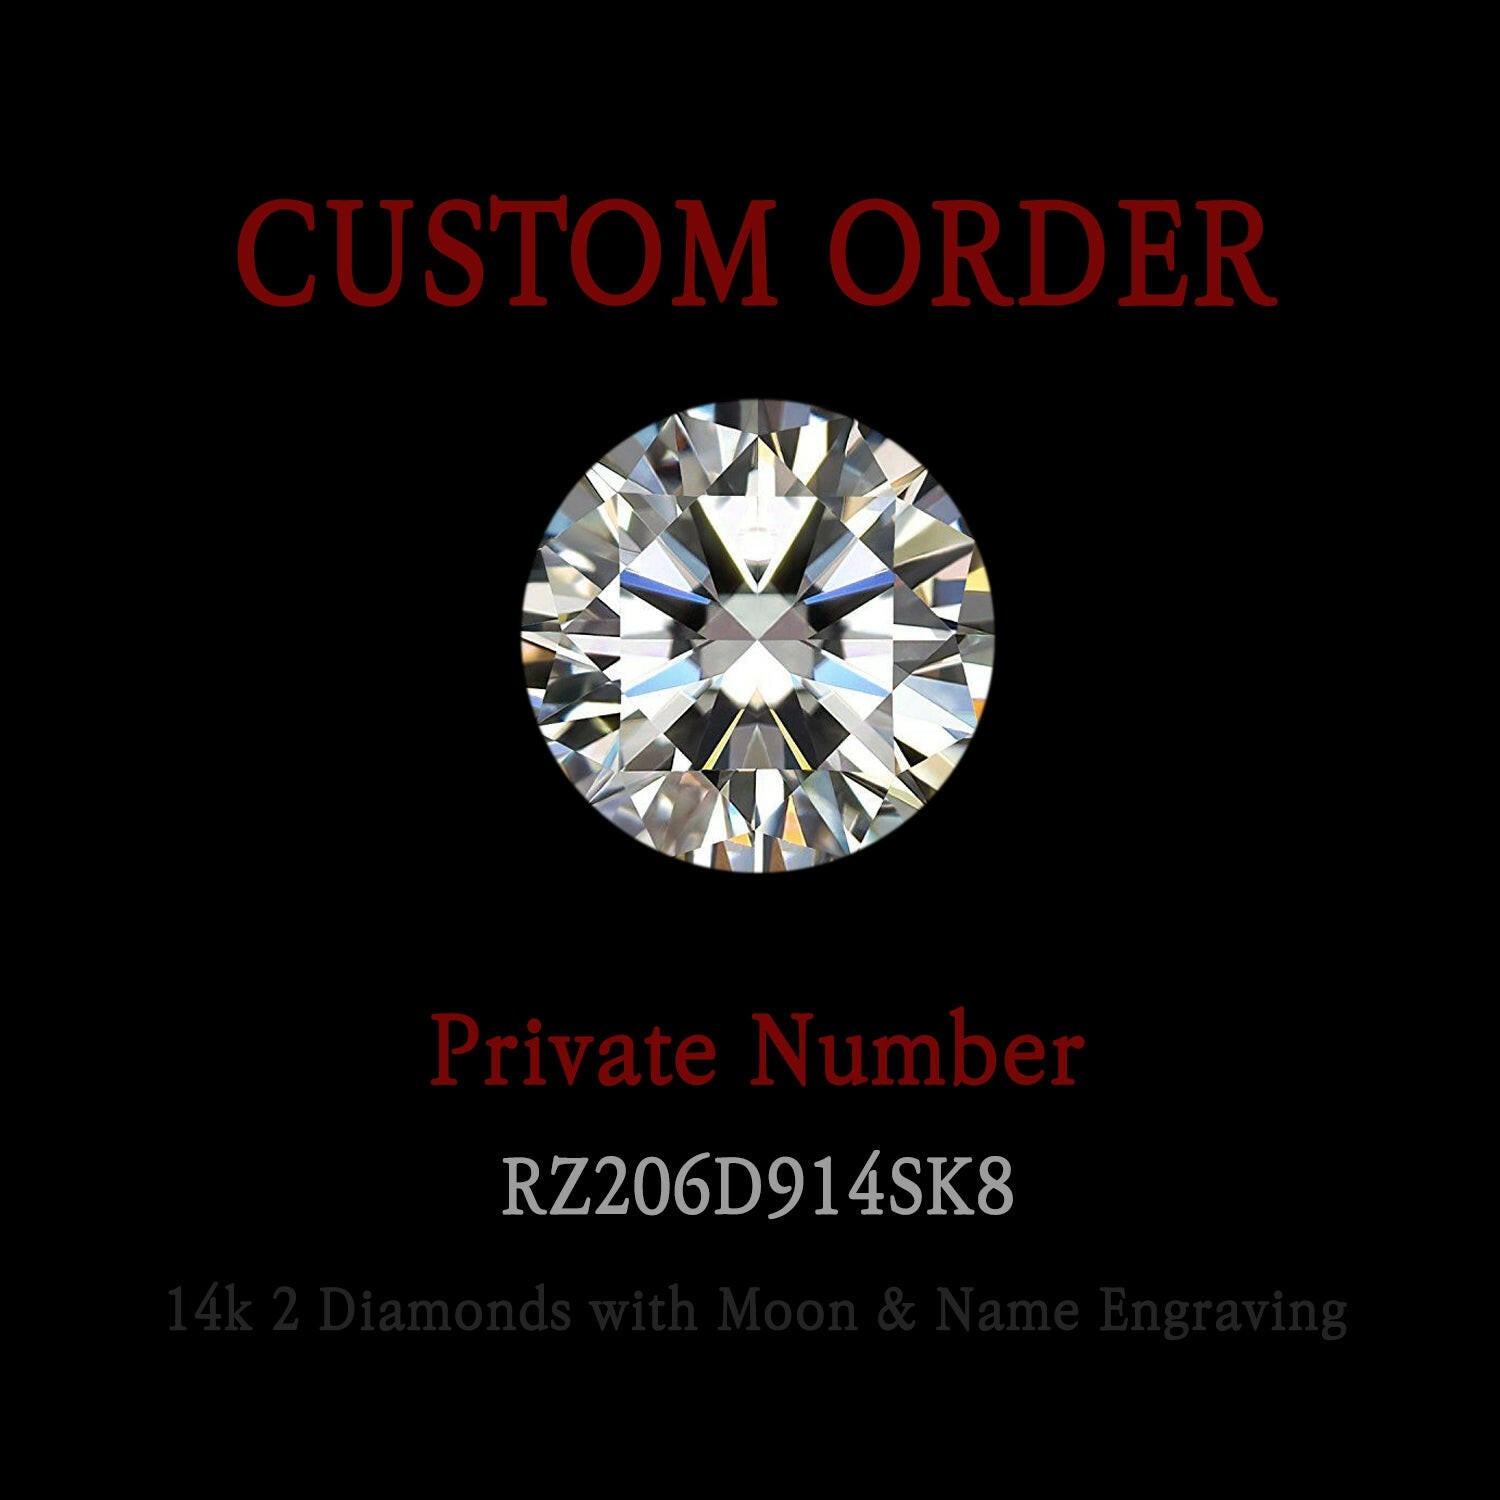 Custom Ring for Abigail Maller - 14k Diamond  with Moon Engraving Ring.